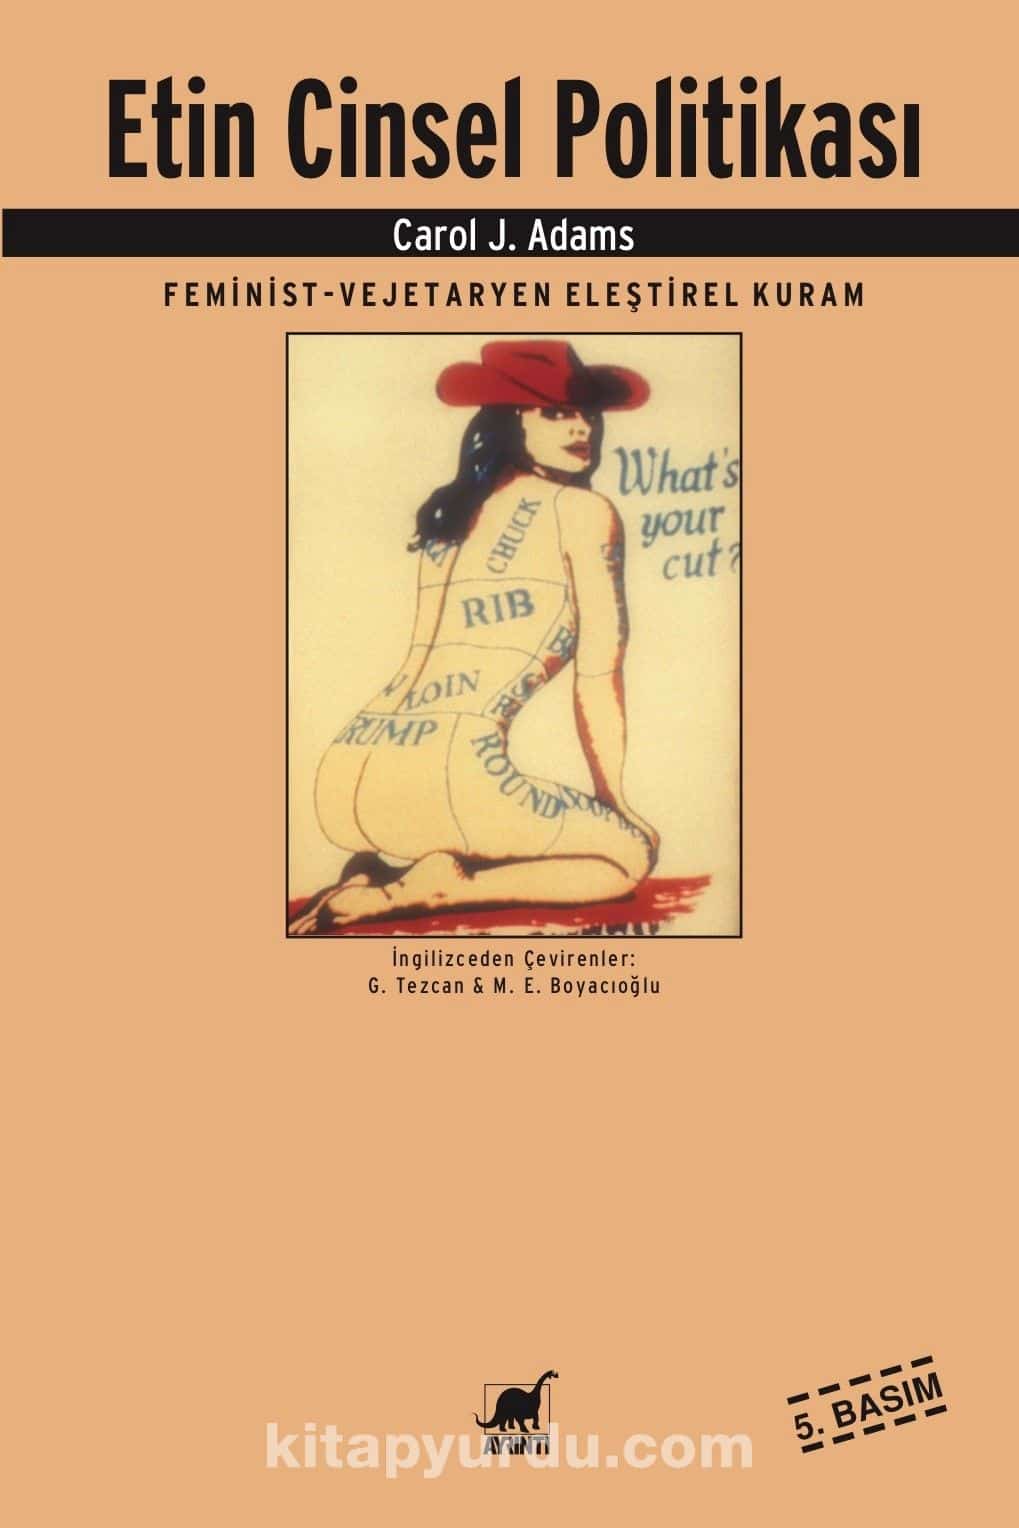 Etin Cinsel Politikası & Feminist-Vejeteryan Eleştirel Kuram